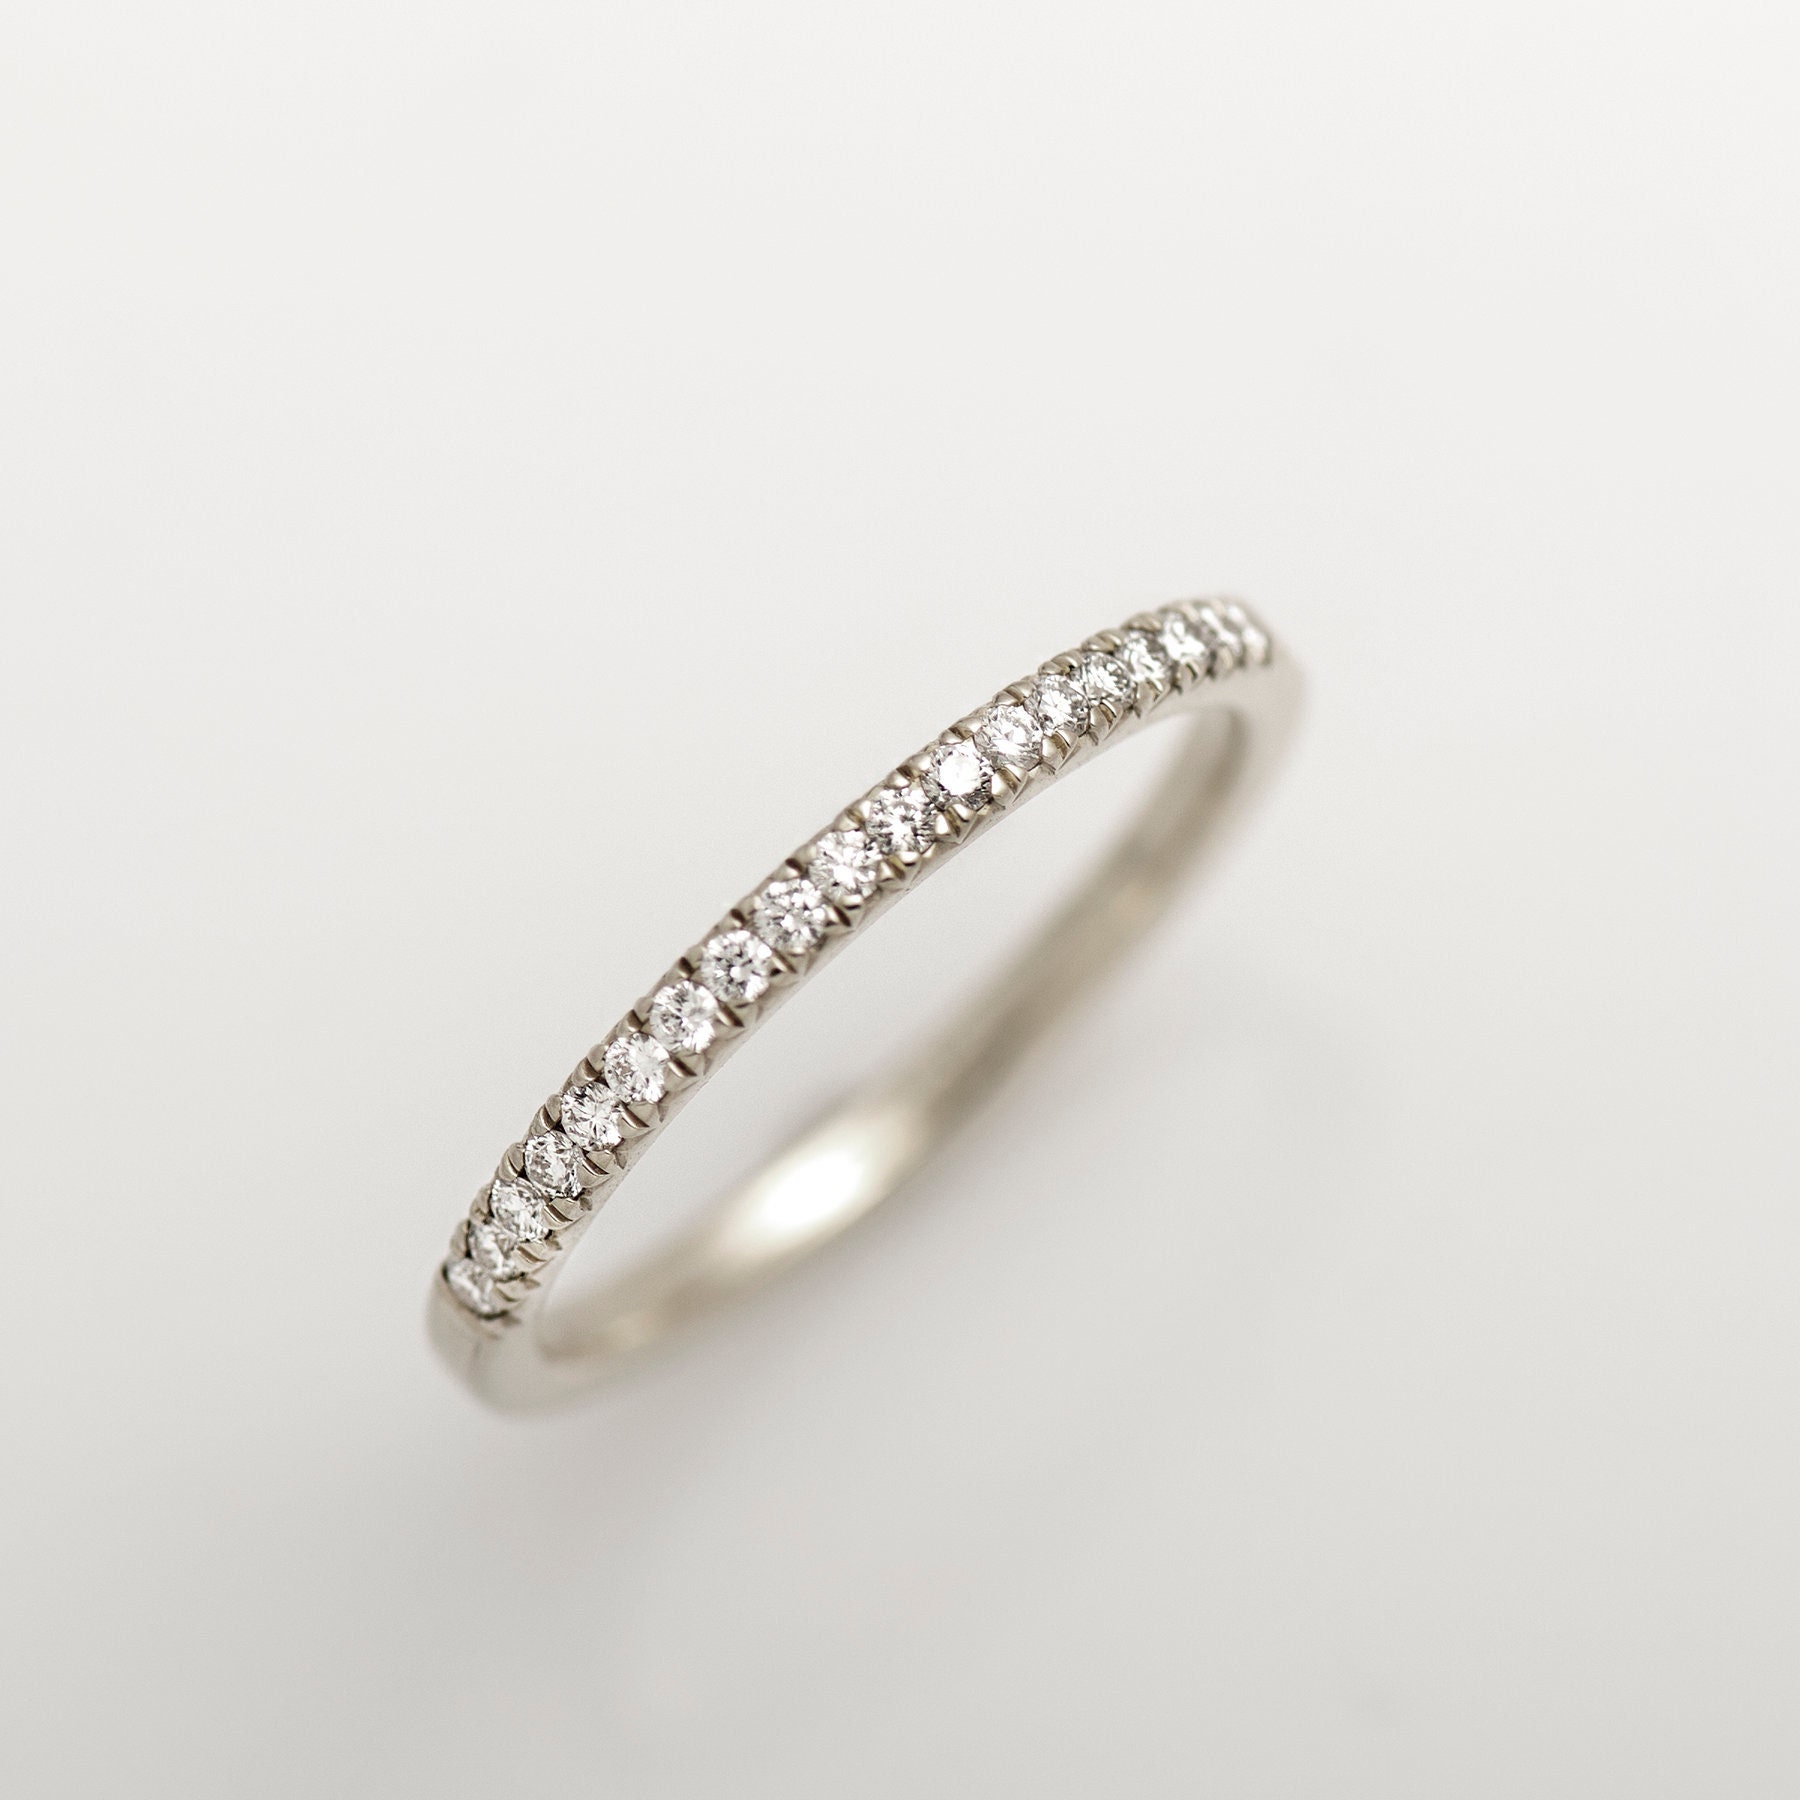 1, 4mm Dünner Pave' Ring, 14K/18K Weißgold, Halb Ewigkeit Diamanten Ehering, Seitlicher Stapeldiamant Dünner Passender Ring von NirOliva